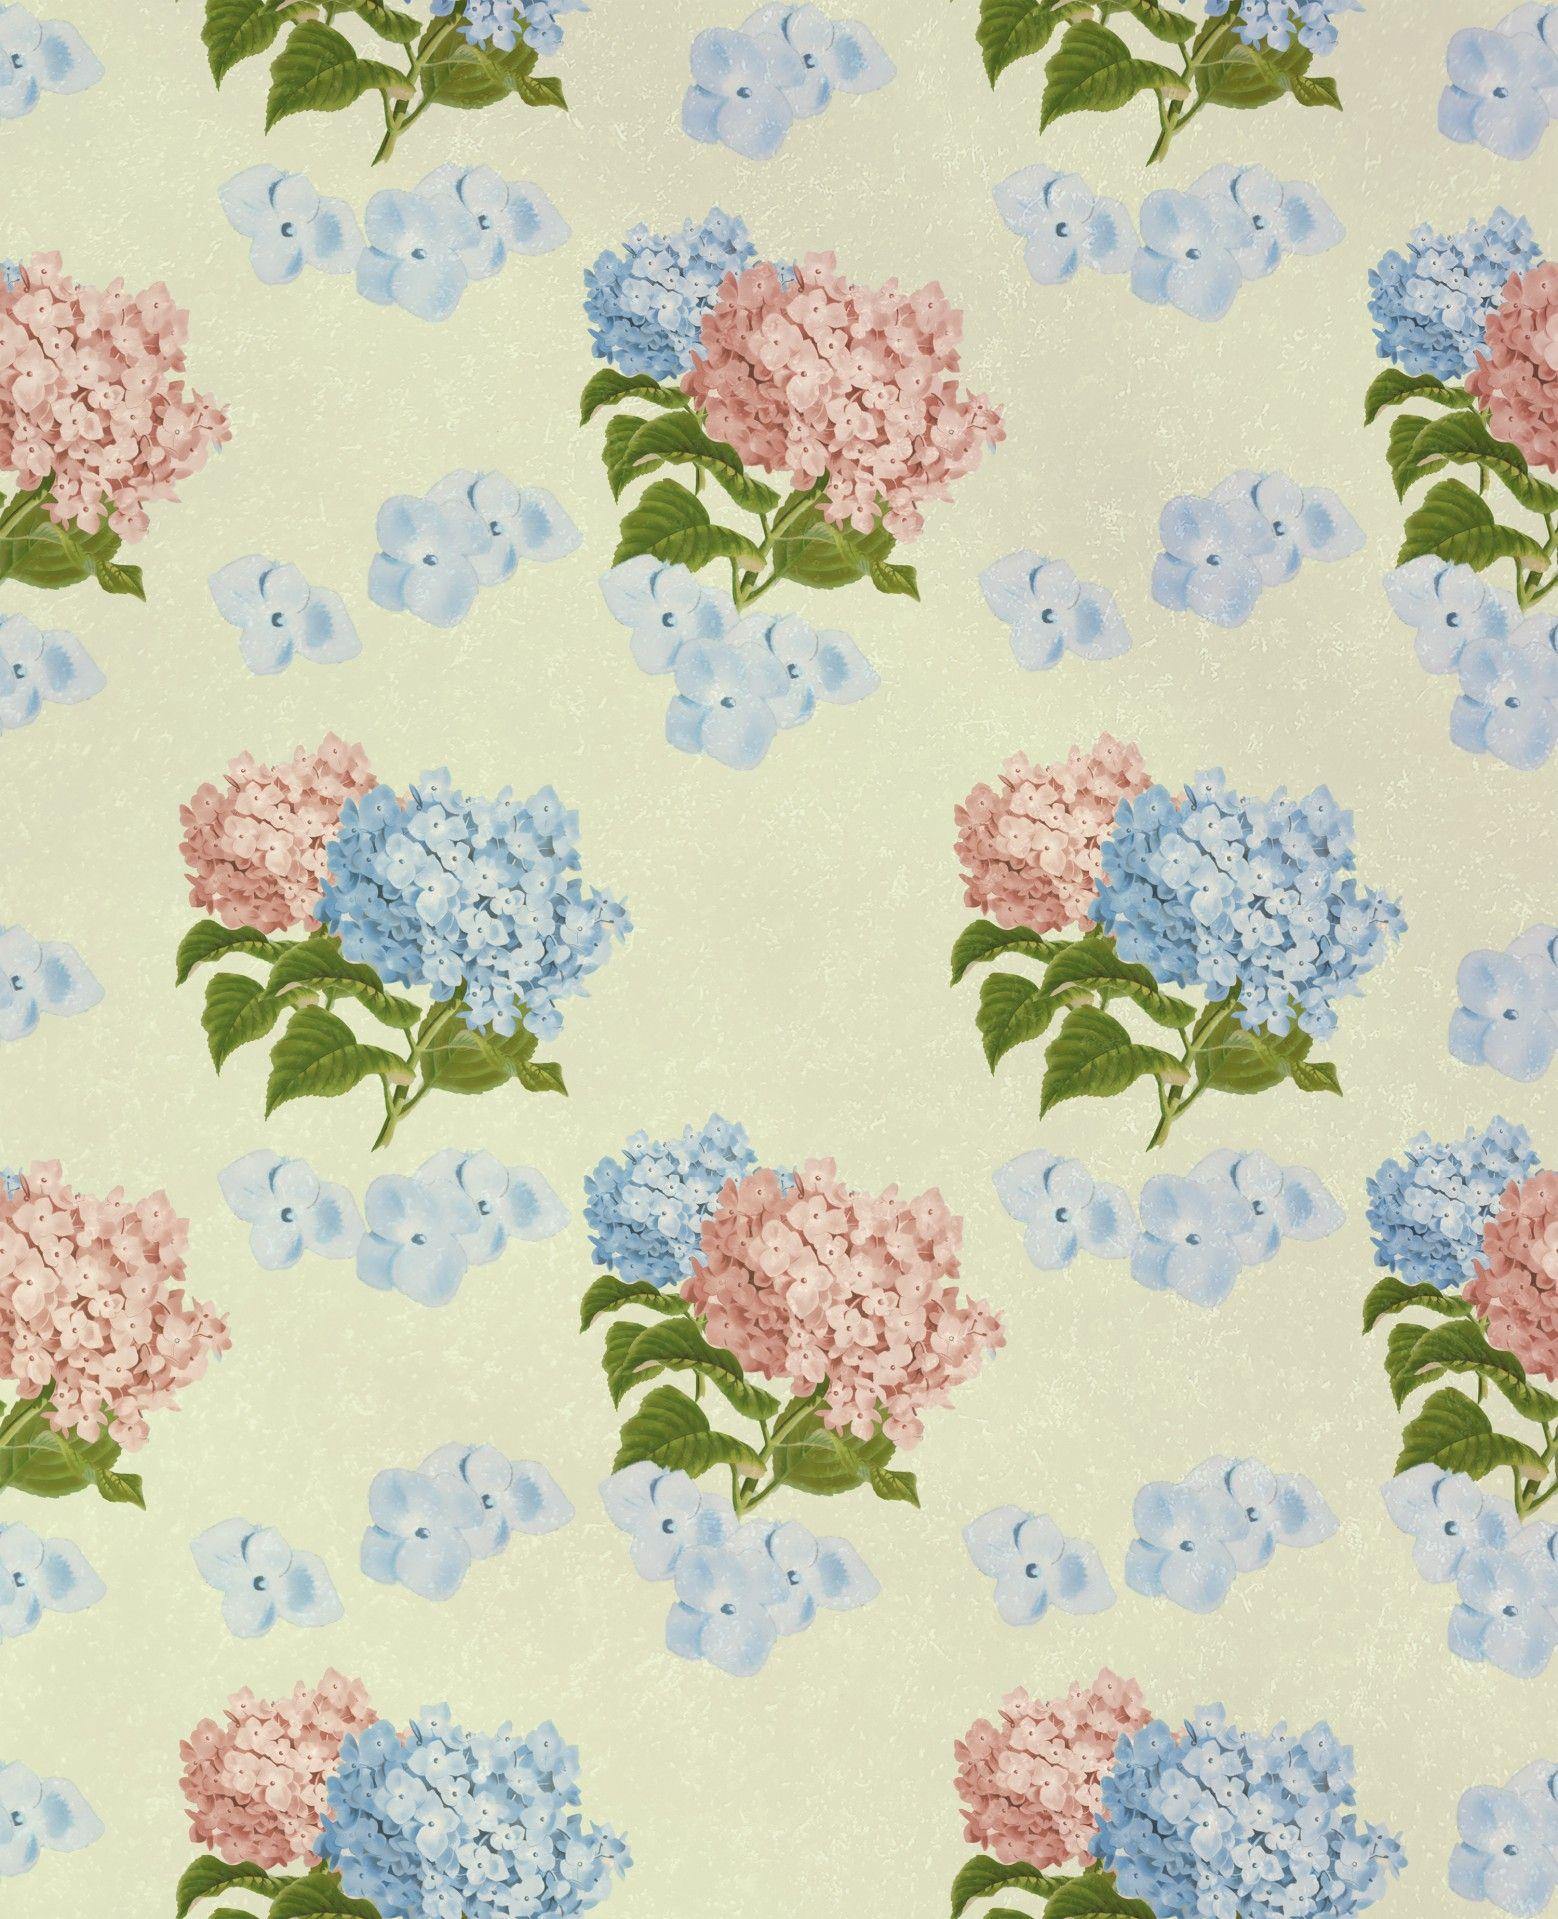 Hydrangea Flowers Vintage Wallpaper Free Domain